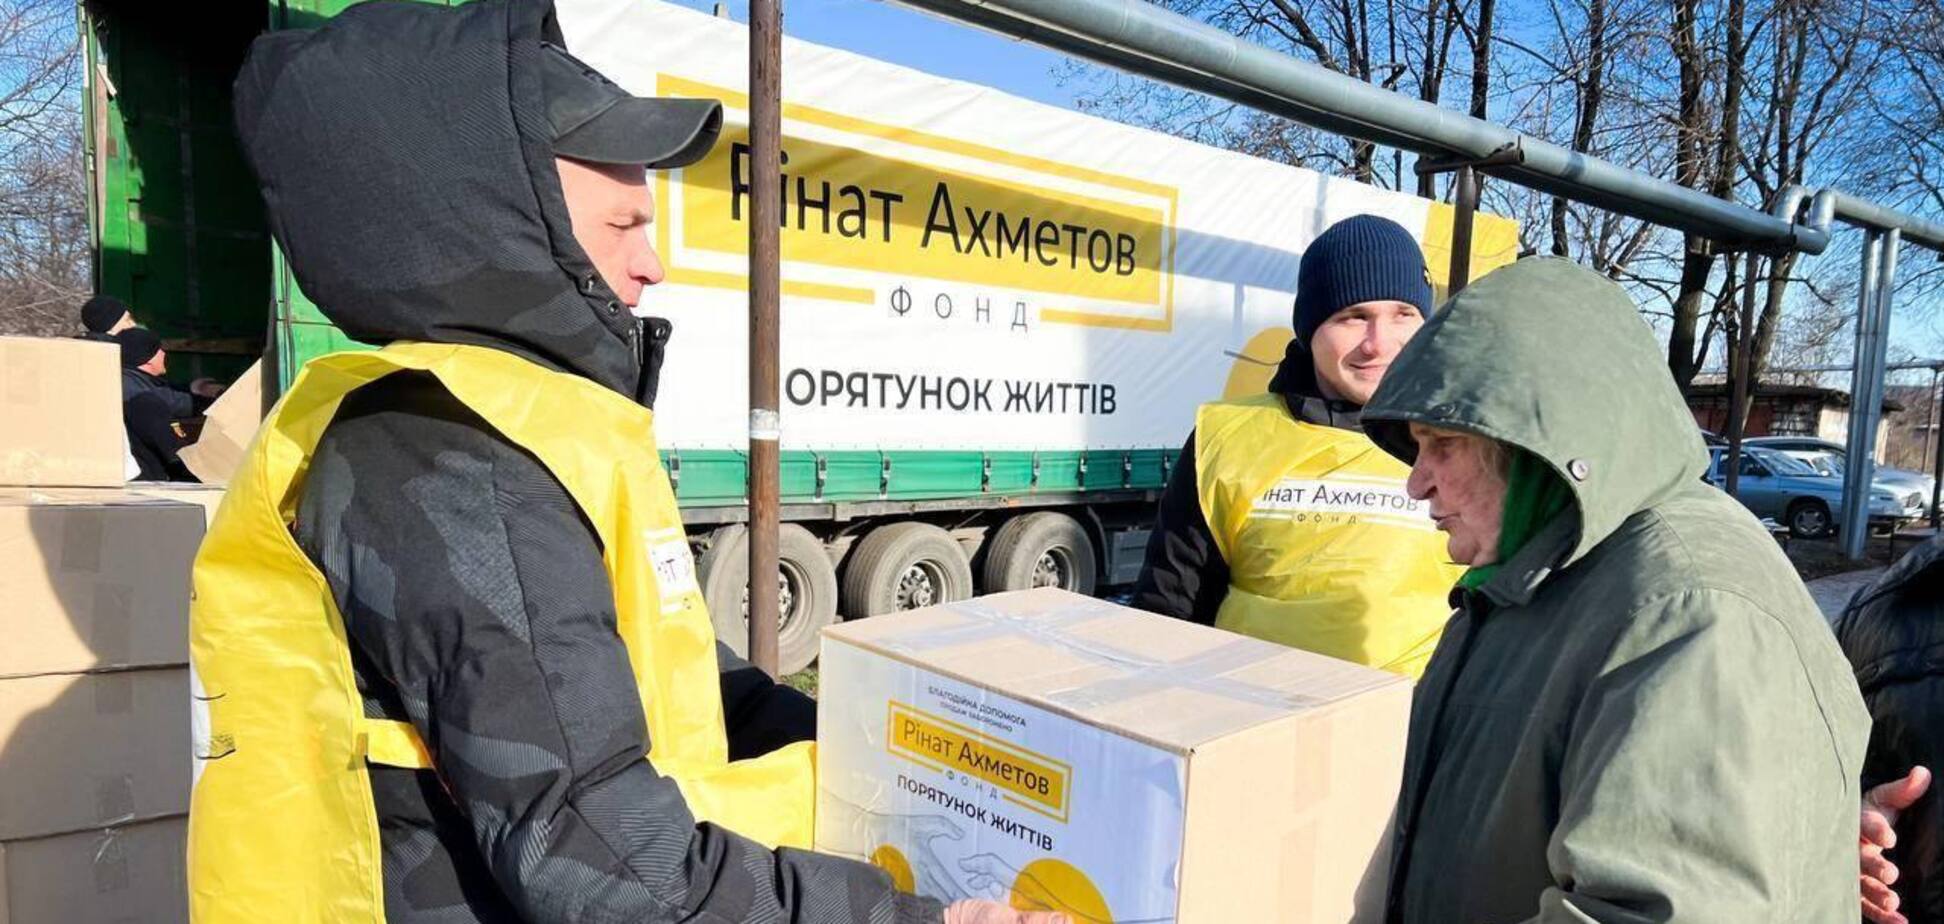 Звільнені села Луганщини отримали гумдопомогу від Фонду Ахметова